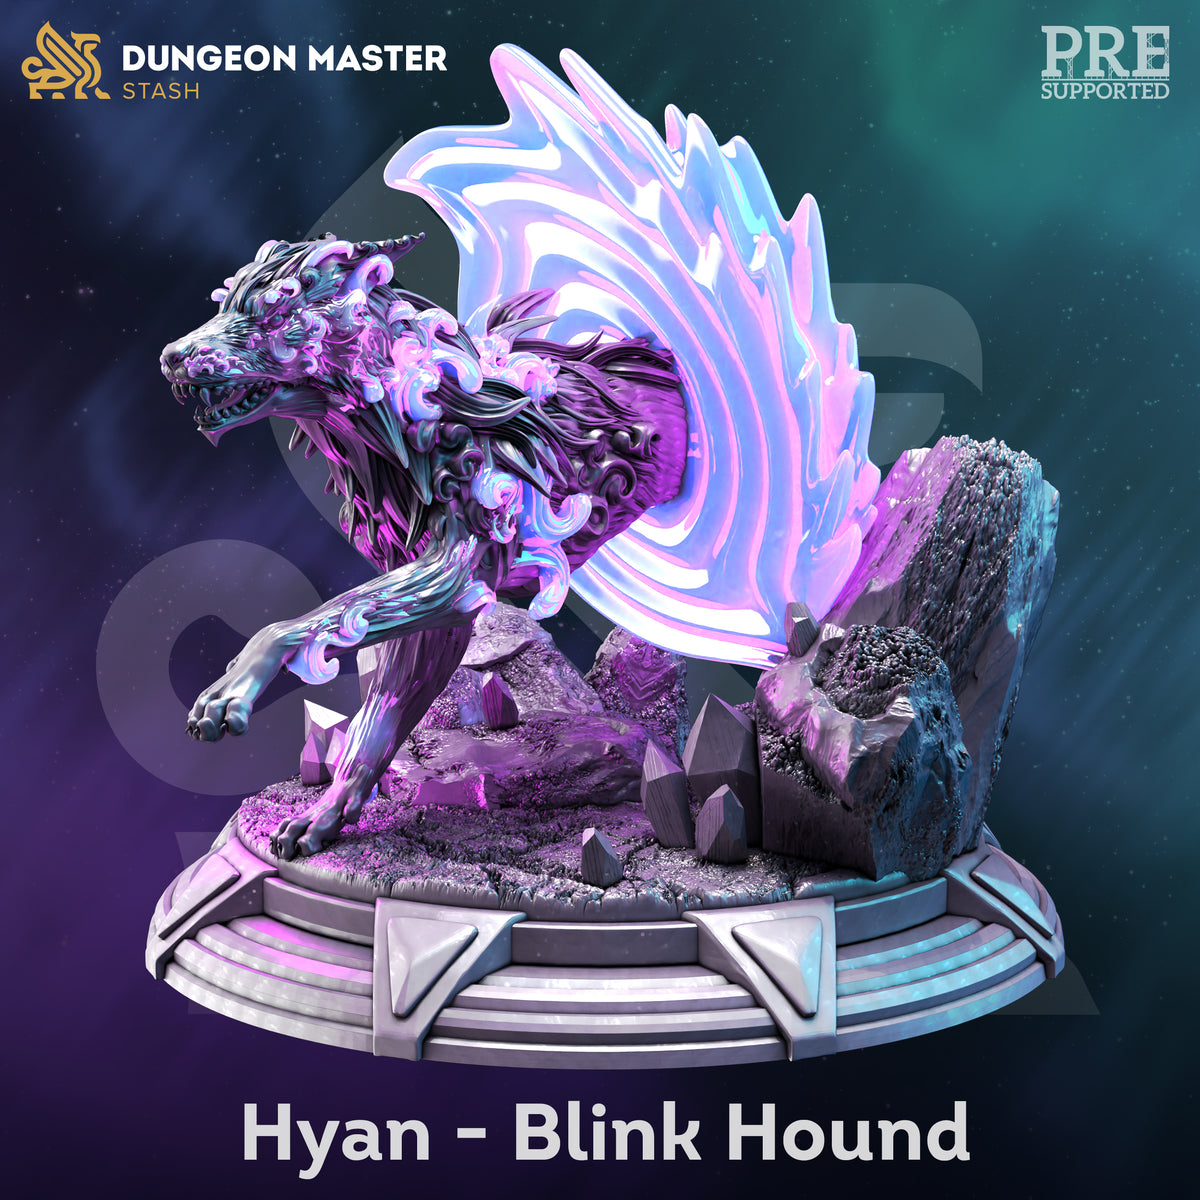 Hyan The Blink Hound